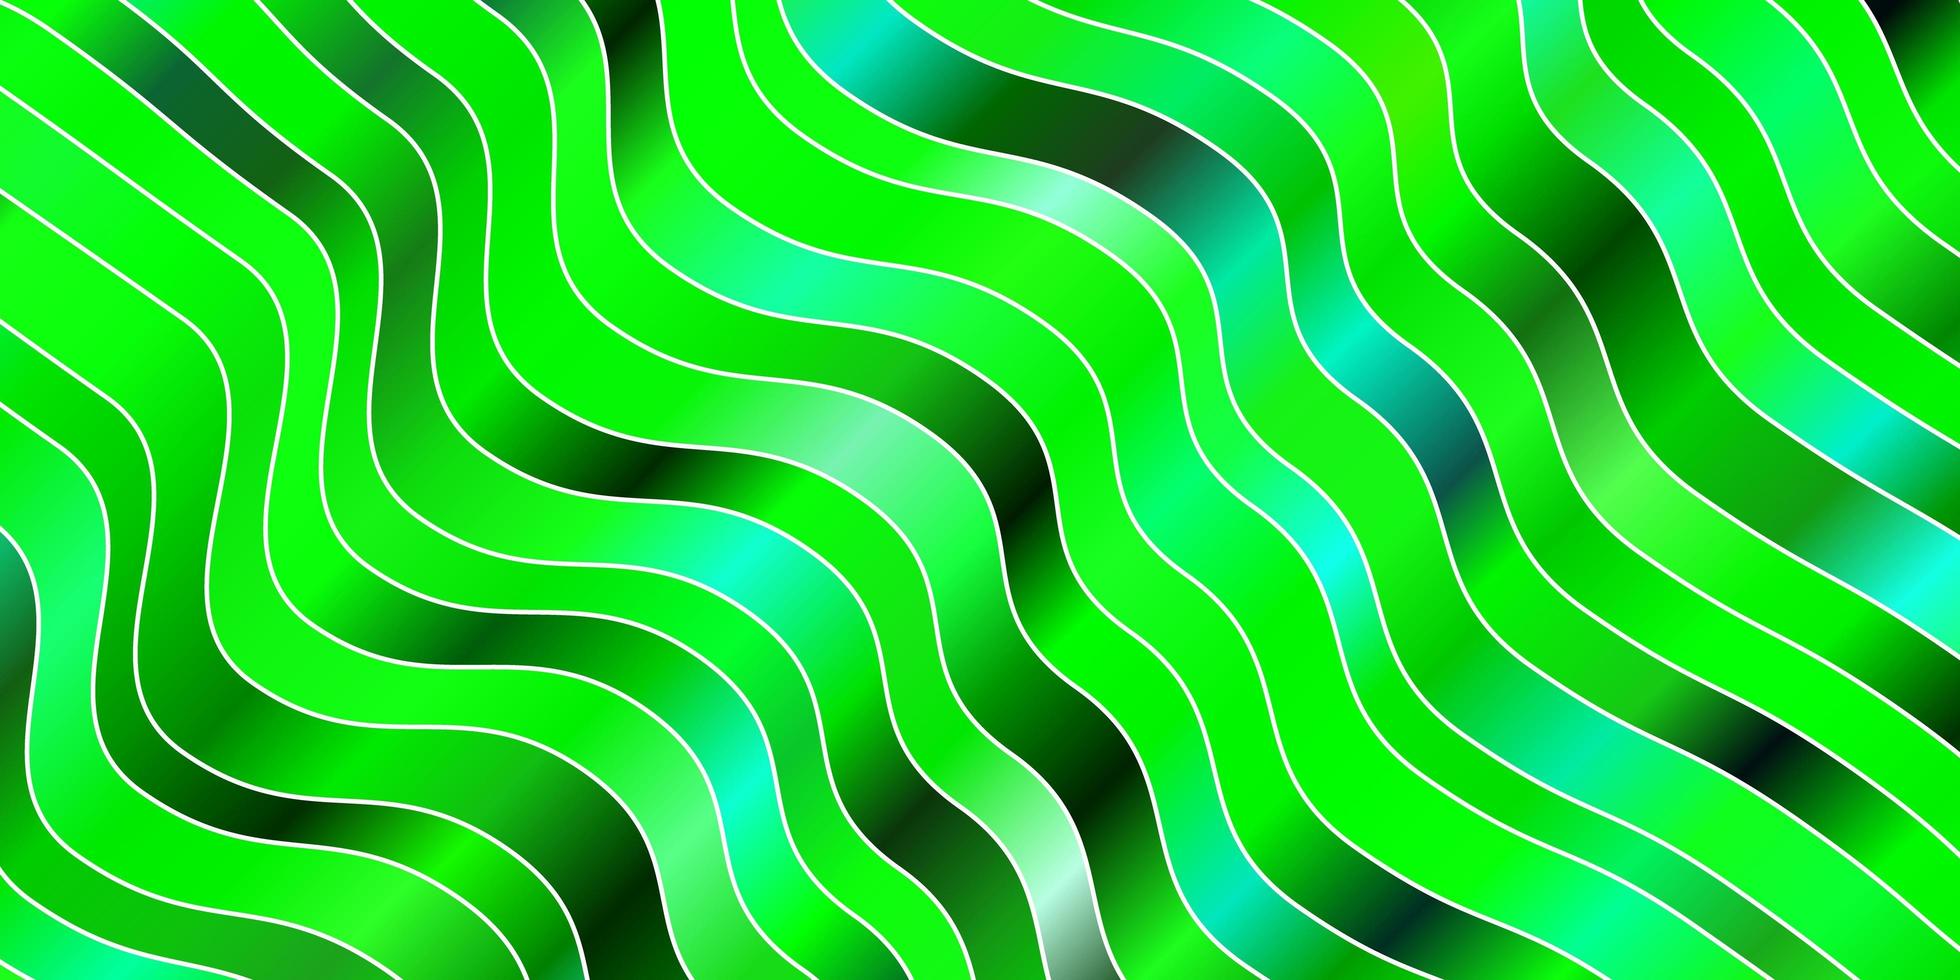 ljusblå, grön vektormall med linjer. vektor